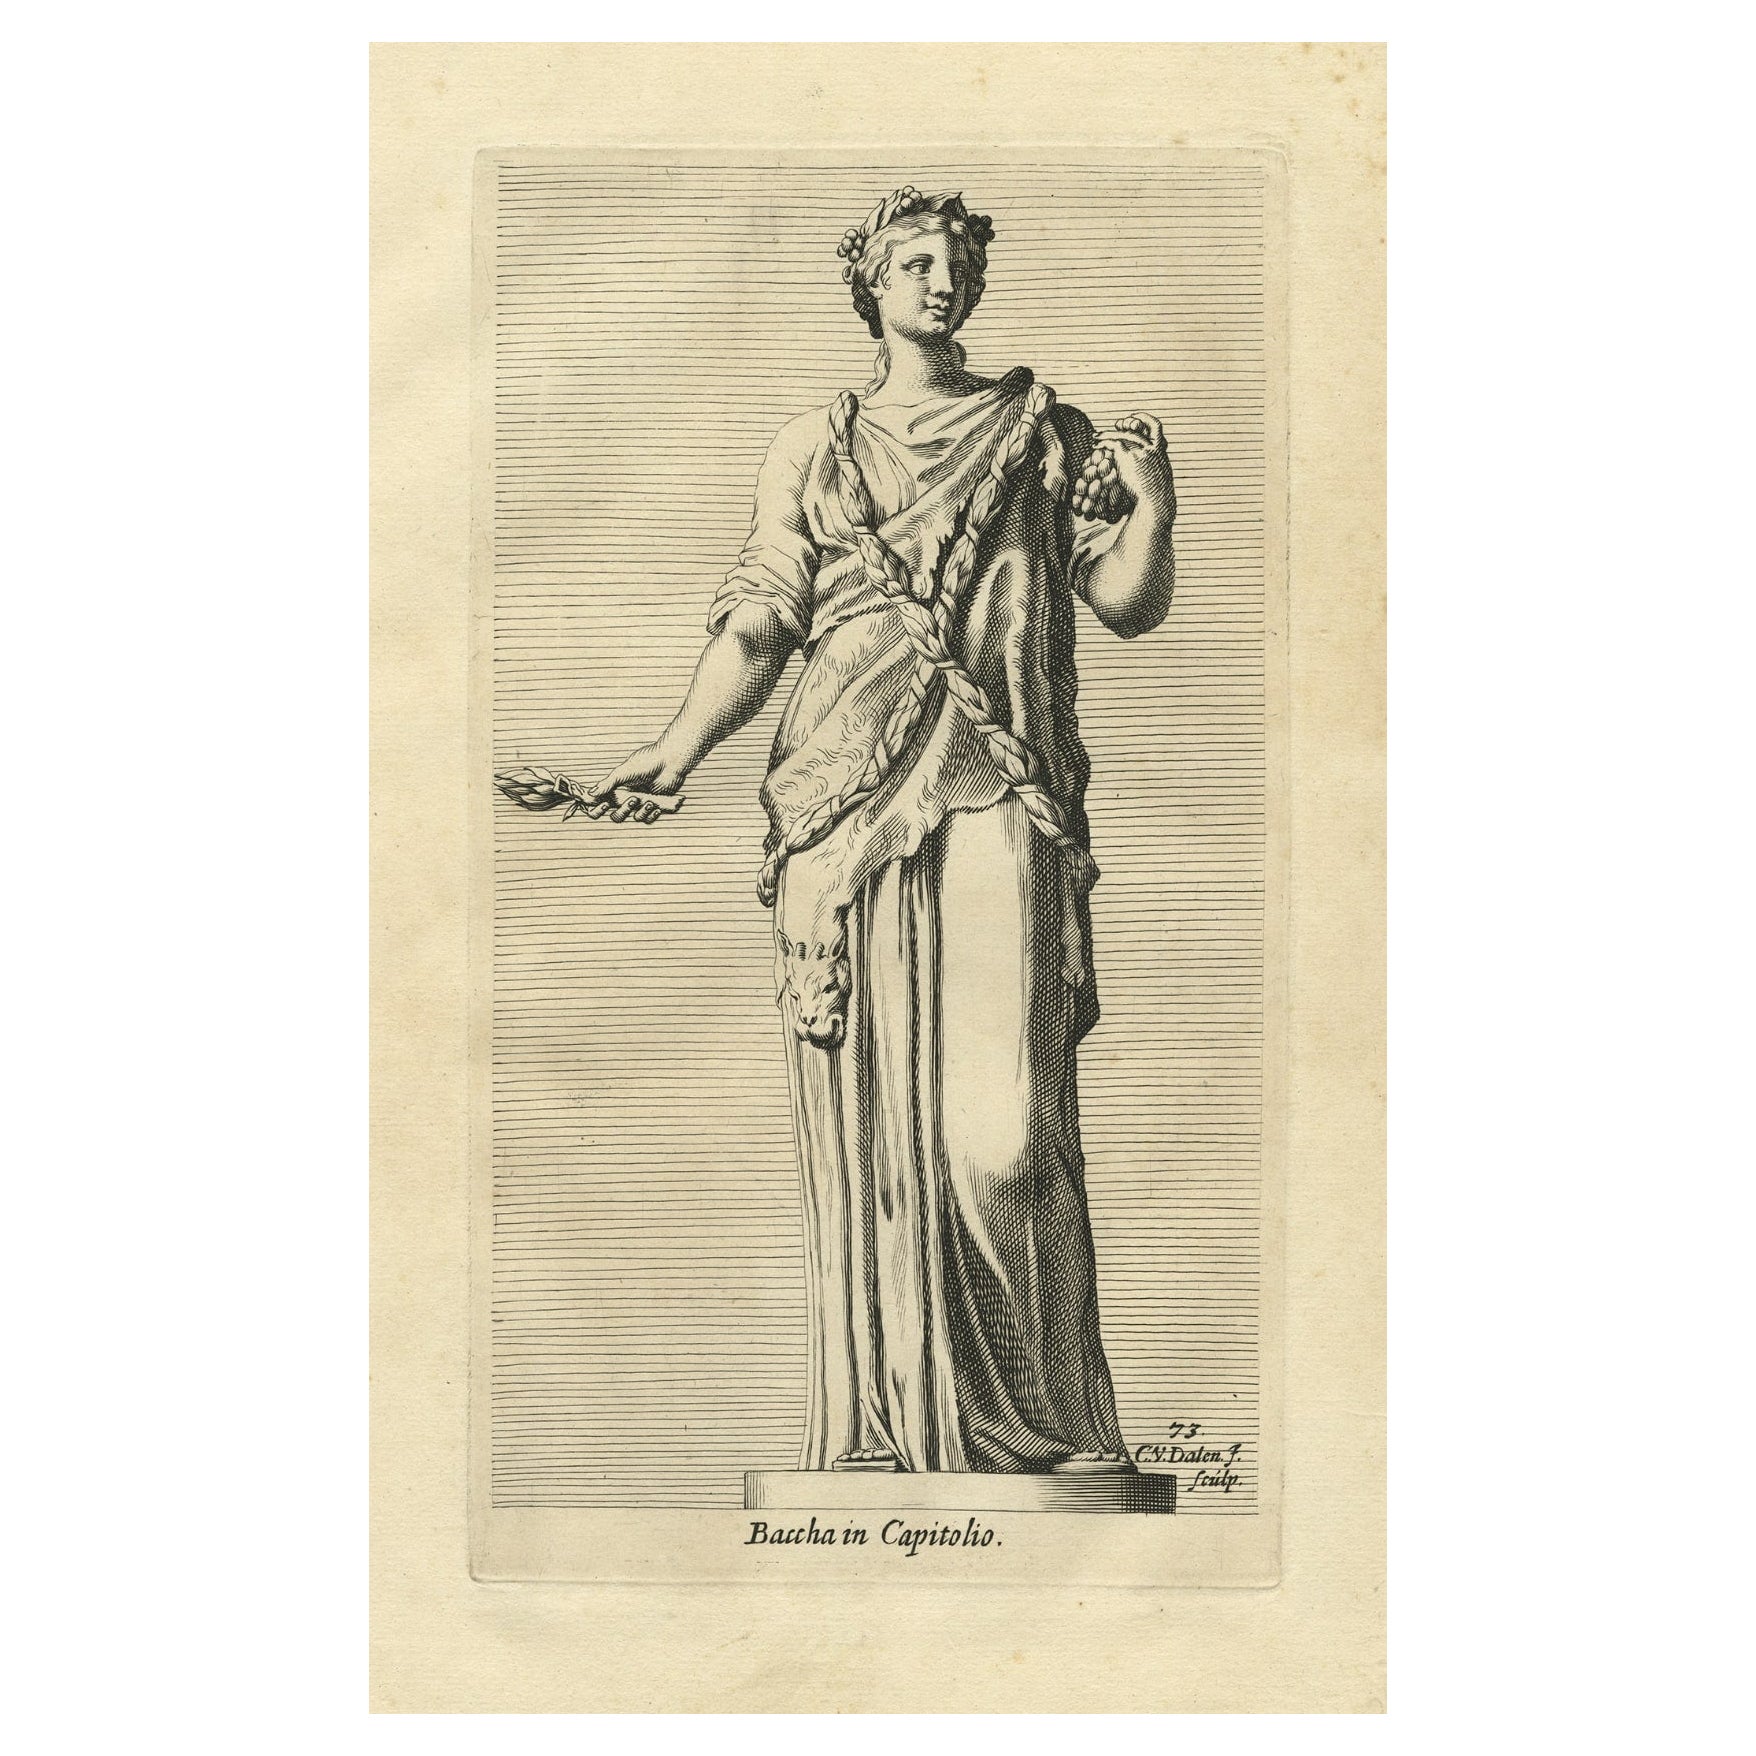 Impression ancienne de Bacchus ou Dionysos mythique, dieu du vin et de la Madness rituelle, 1660